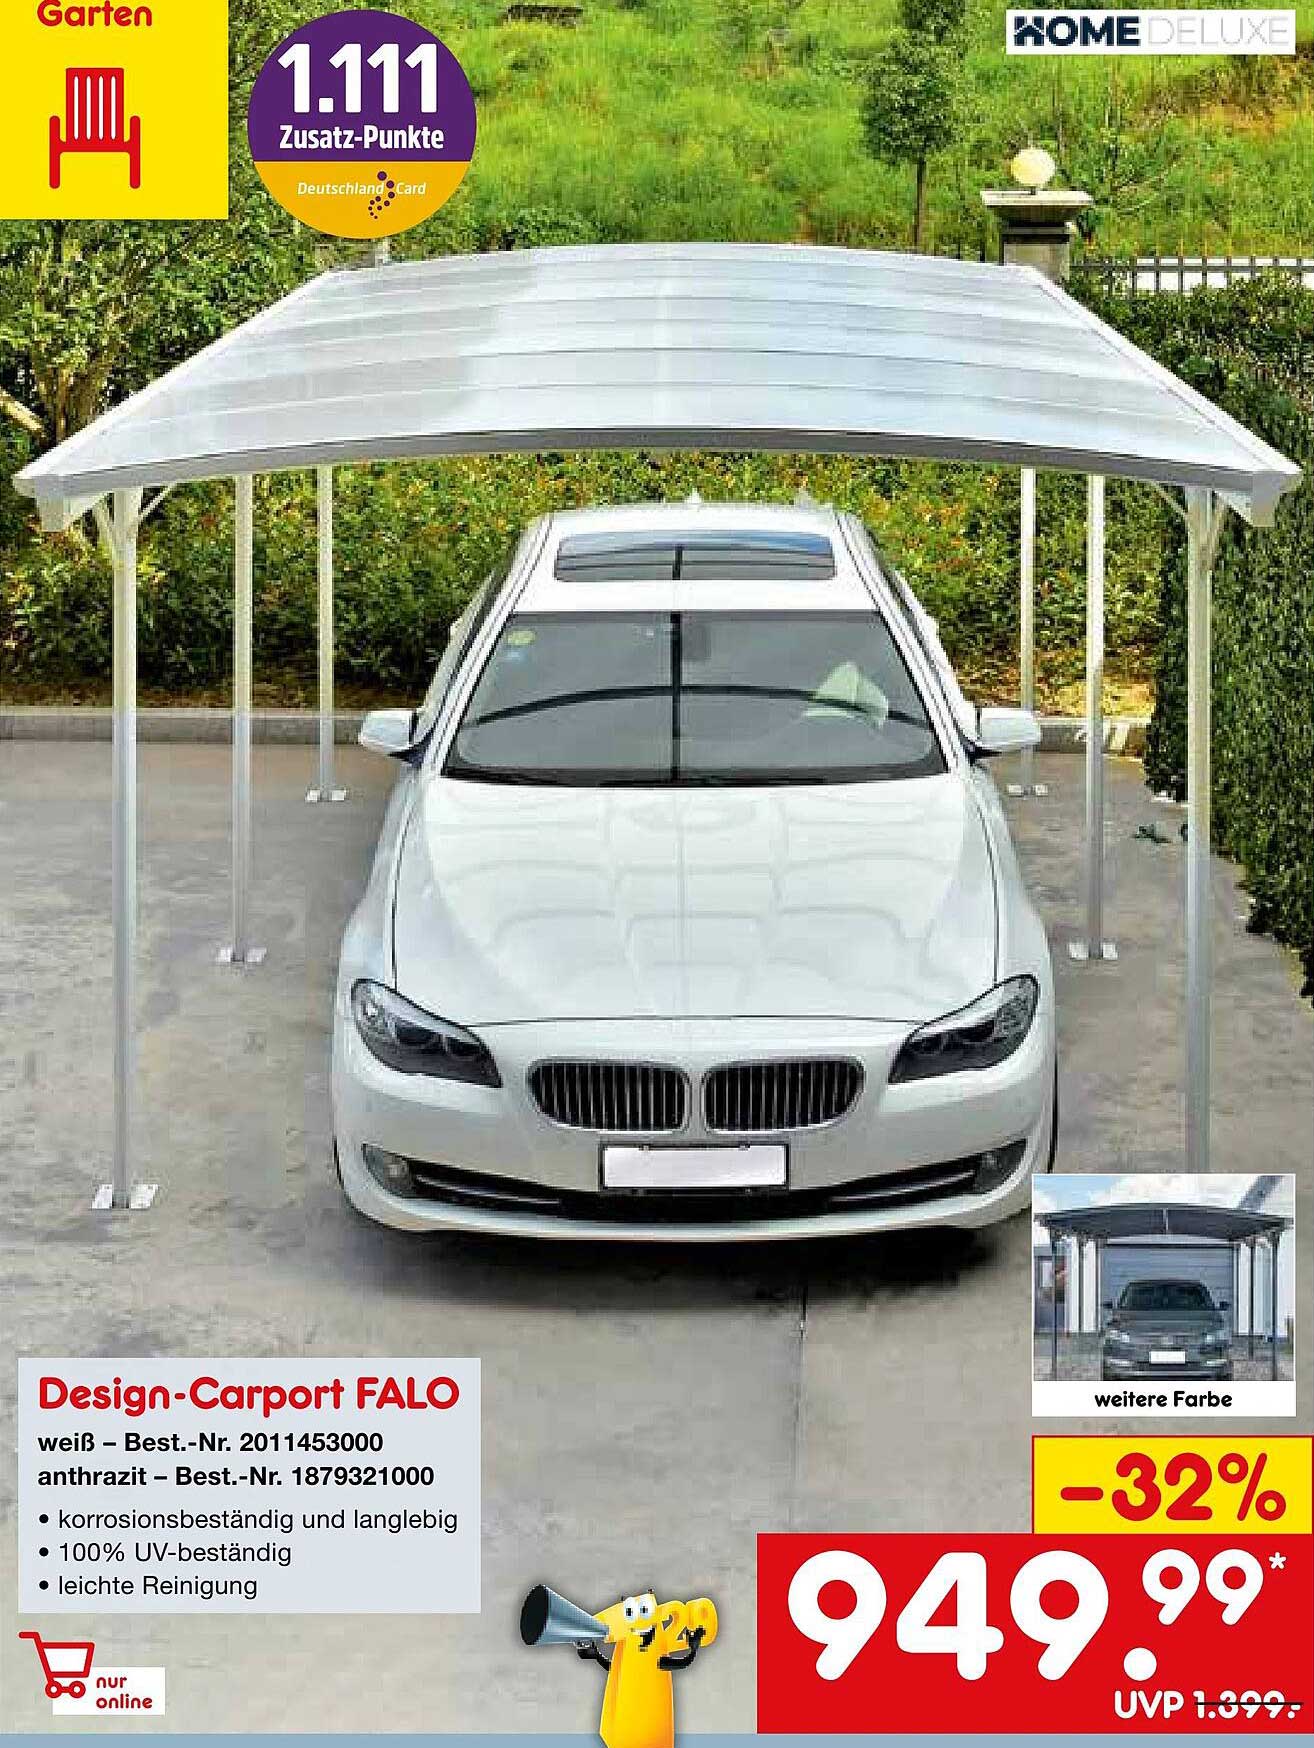 Netto Marken-Discount Home Deluxe Design-carport Falo